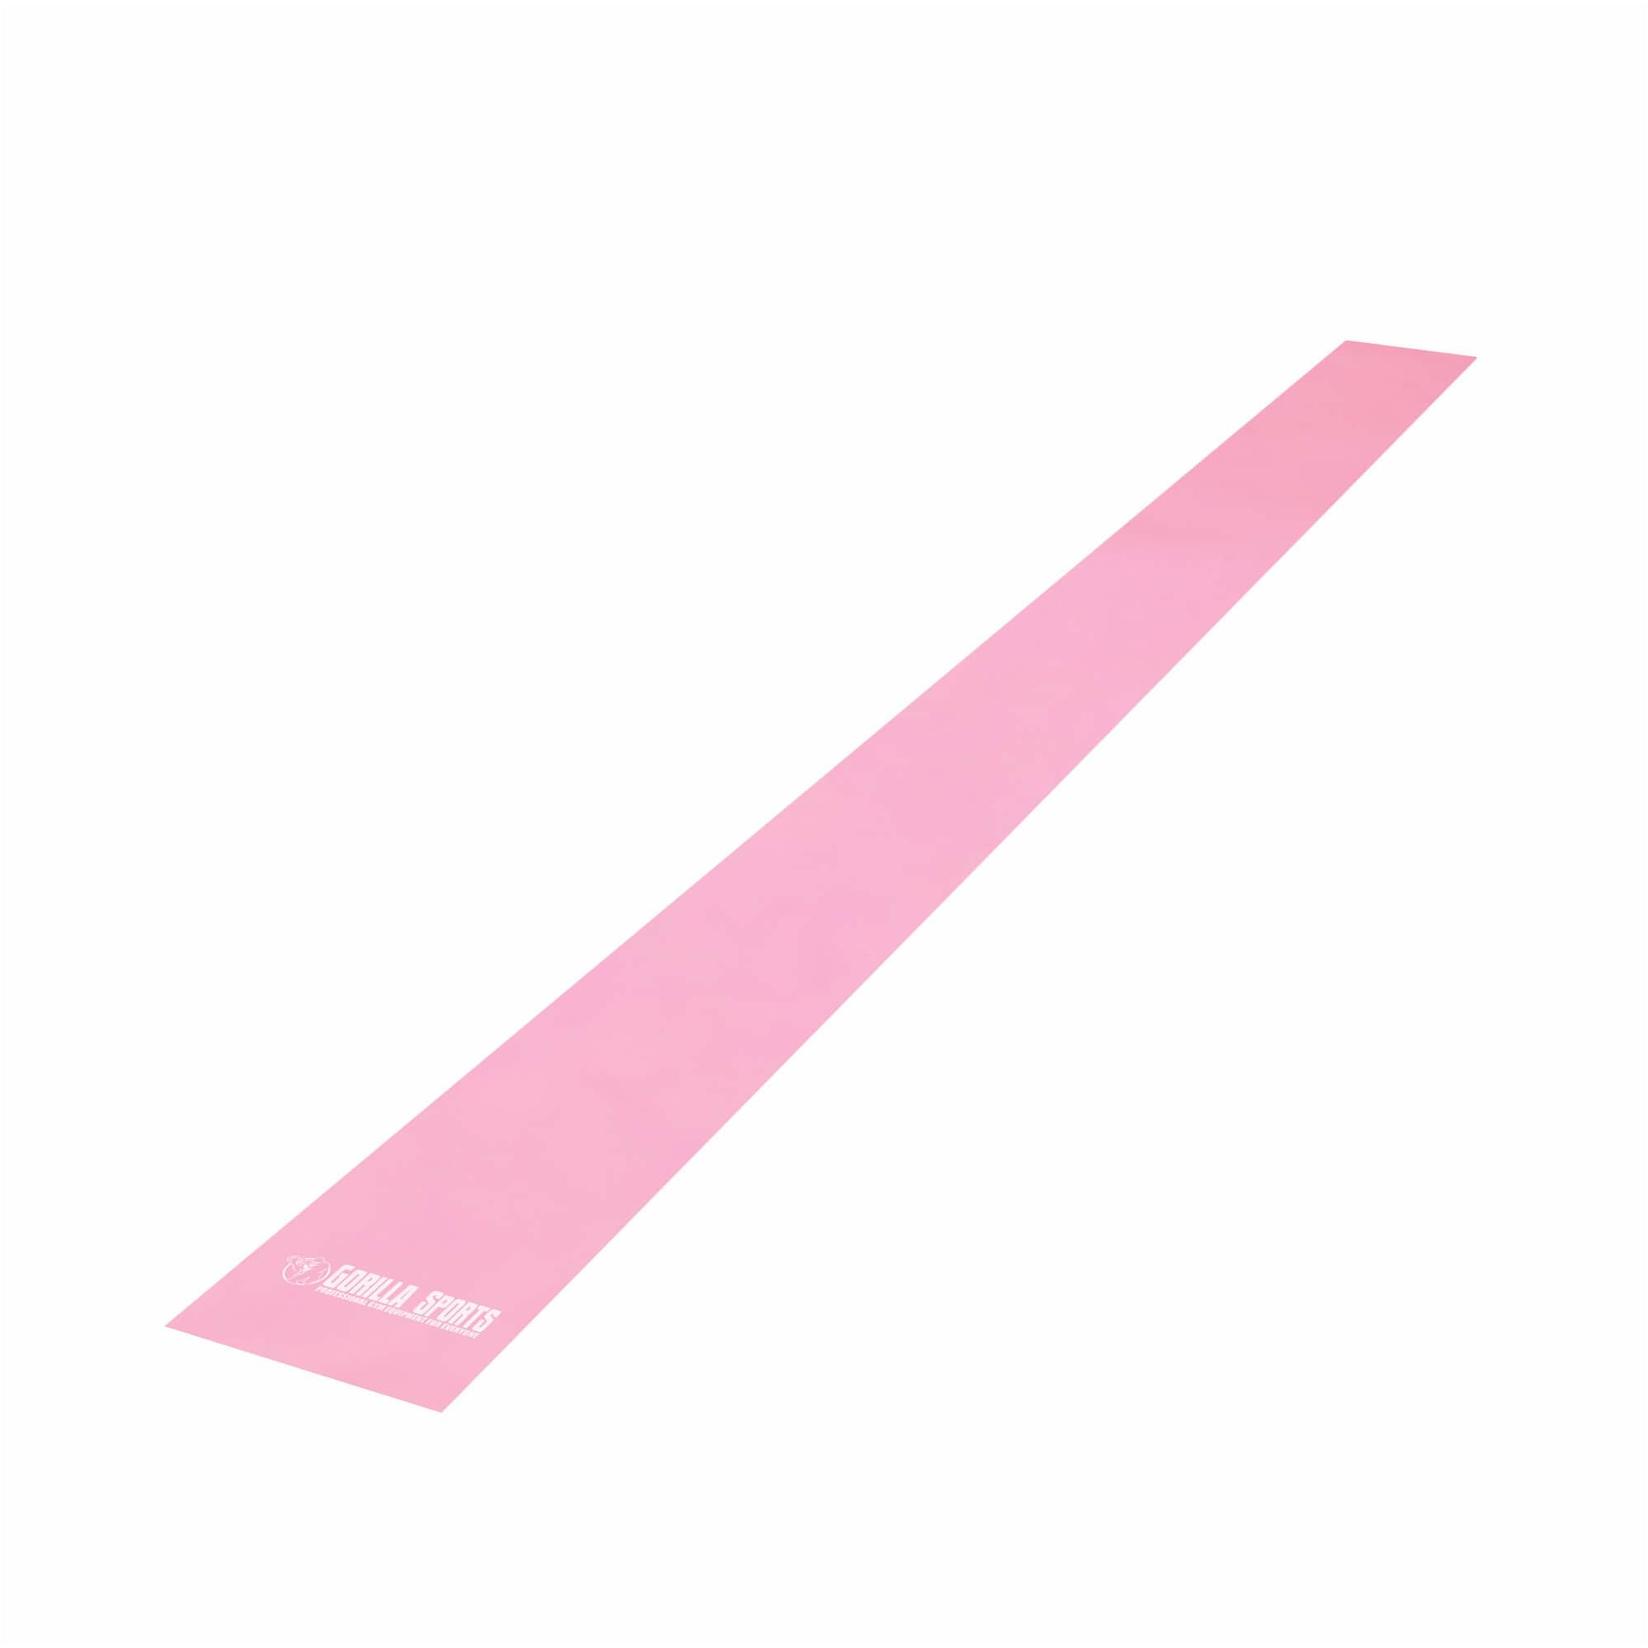 GORILLA SPORTS Elastična traka za vežbanje 200 cm u roze boji